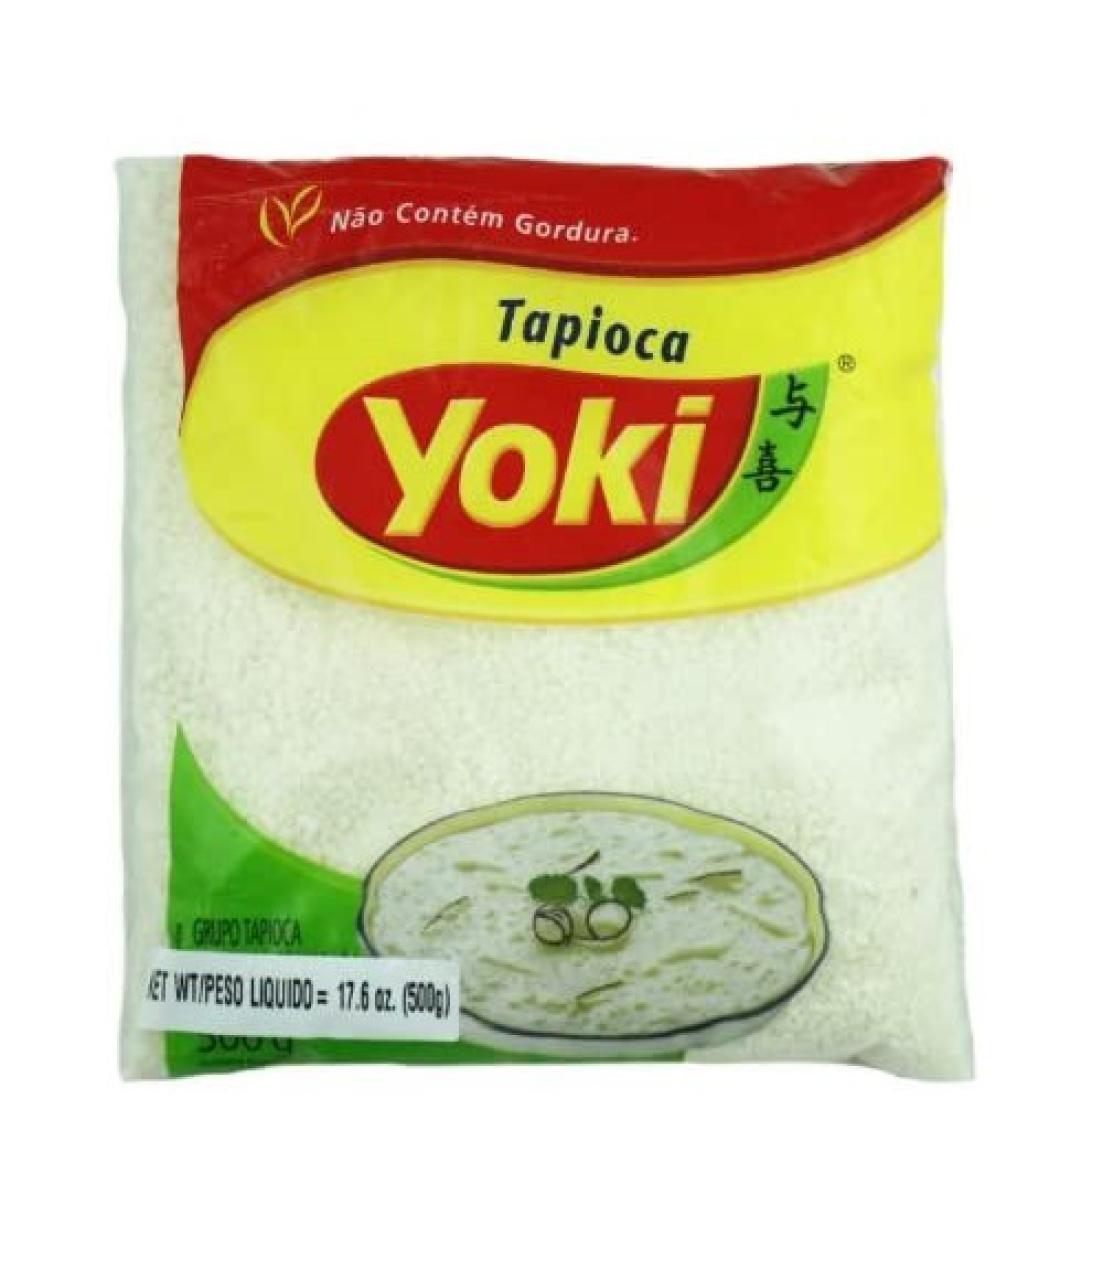 Yoki tapioca